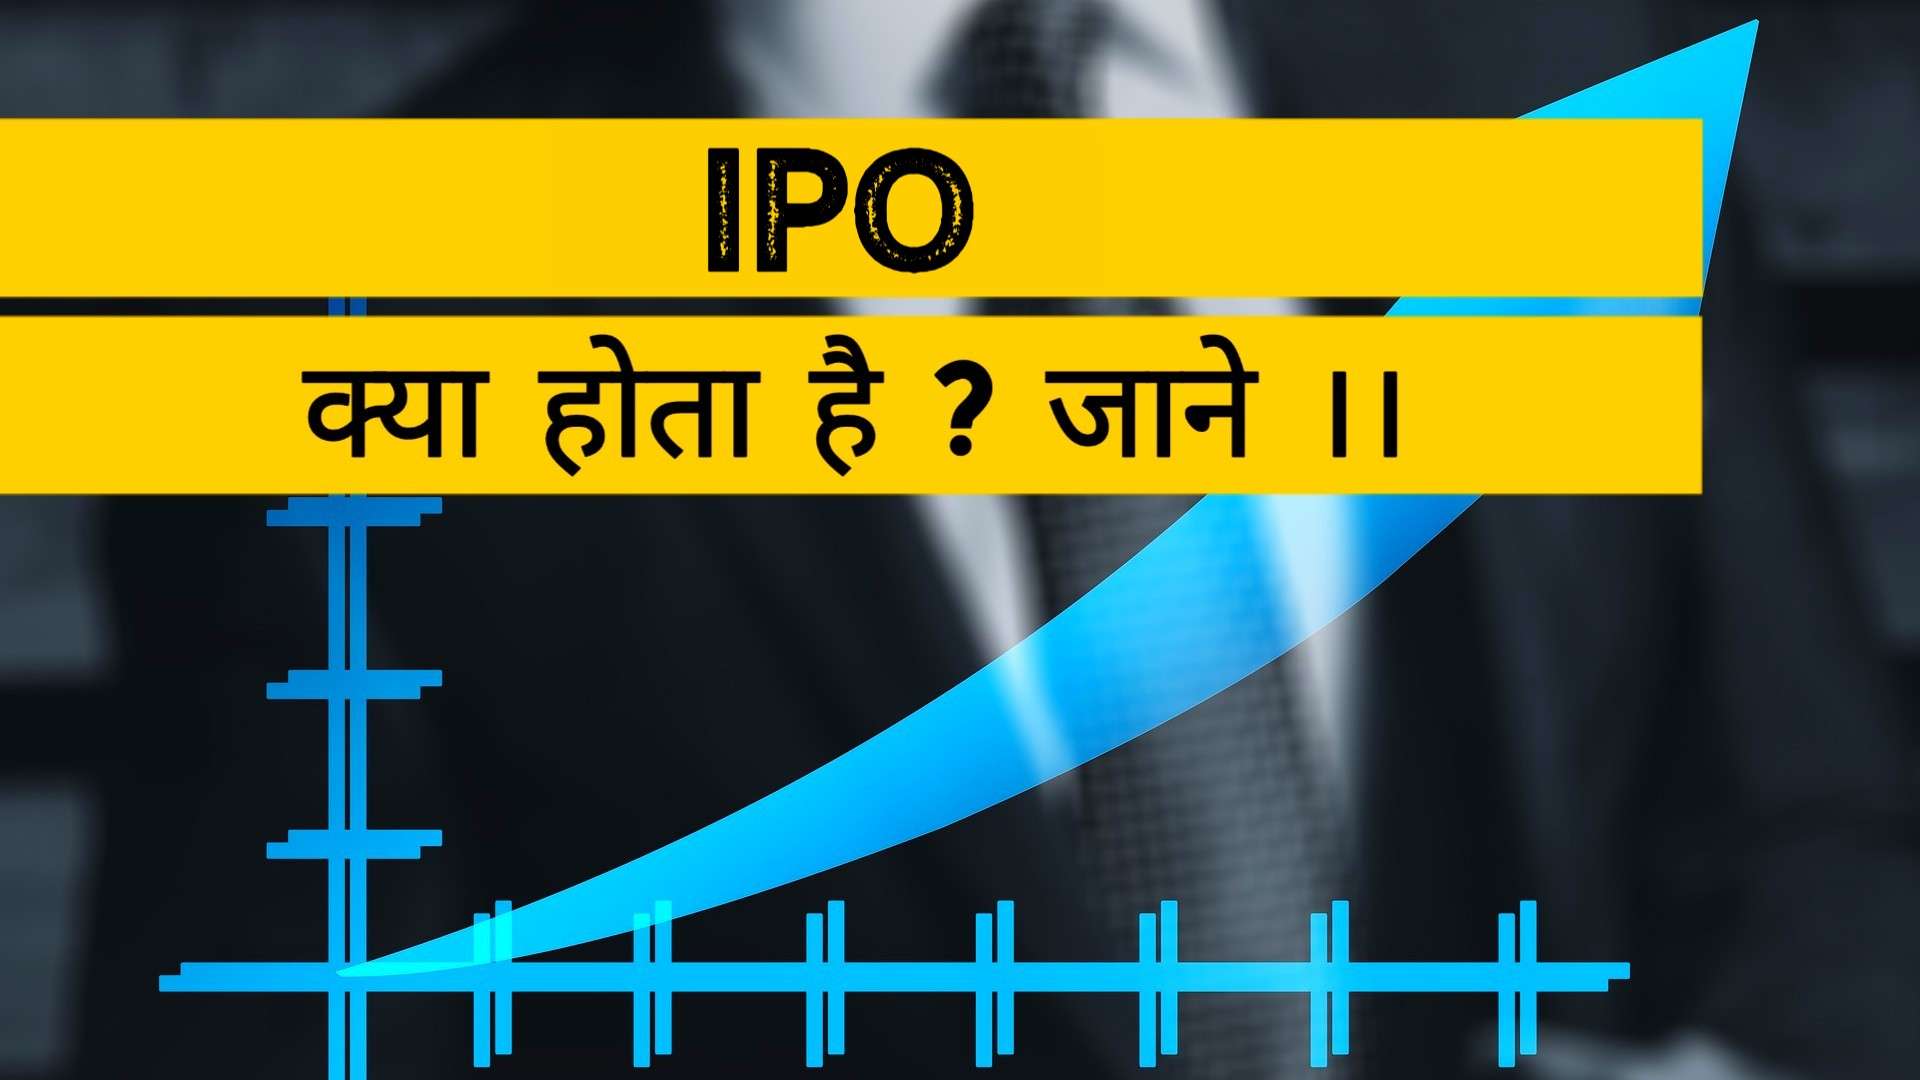 IPO क्या होता है ?